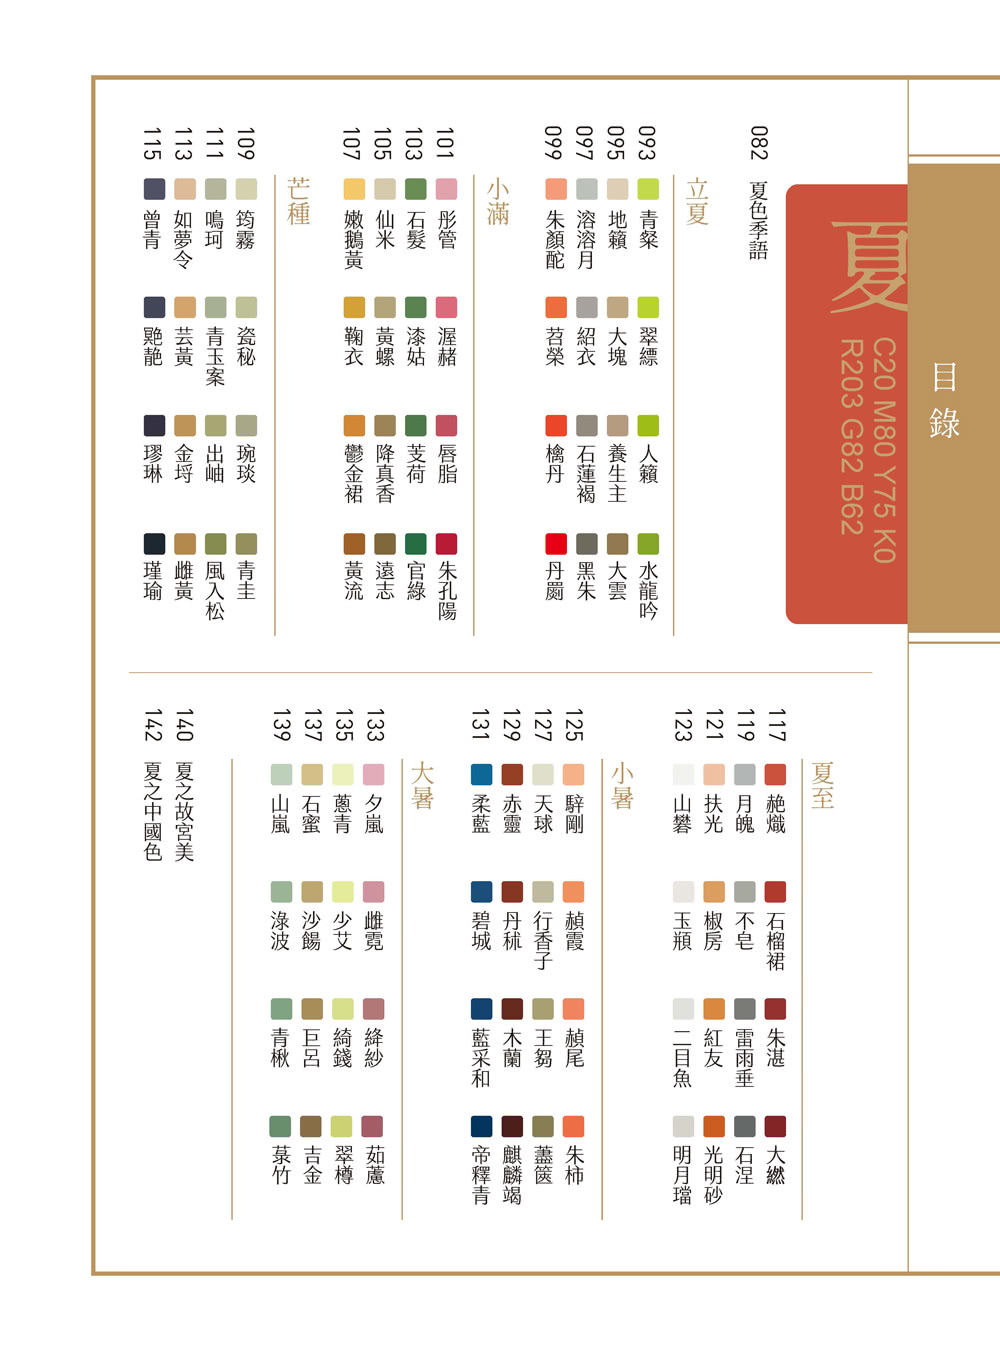 故宮裡的色彩美學與配色事典 24節氣 72物候 96件手繪文物 384種中華傳統色重現古典生活之美 Momo購物網